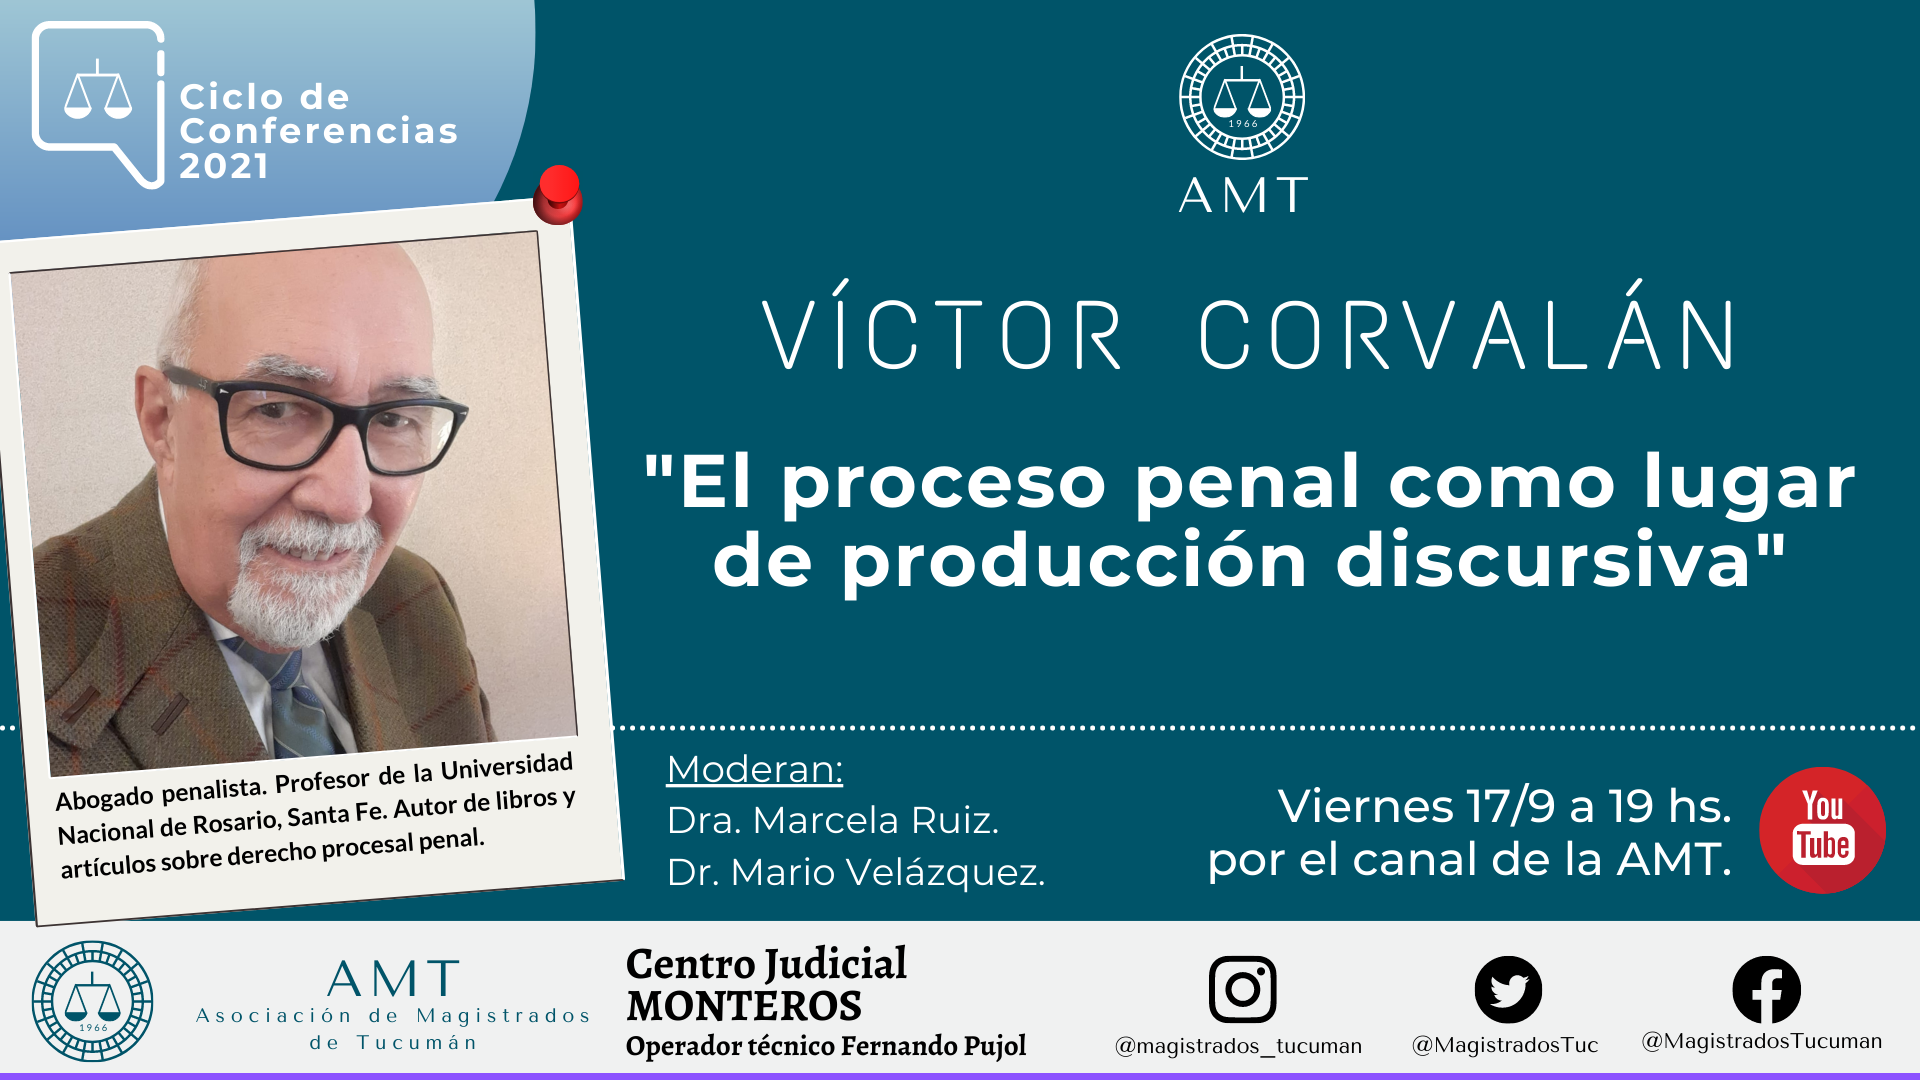 Vuelva a ver la conferencia de Víctor Corvalán «El proceso penal como lugar de producción discursiva»